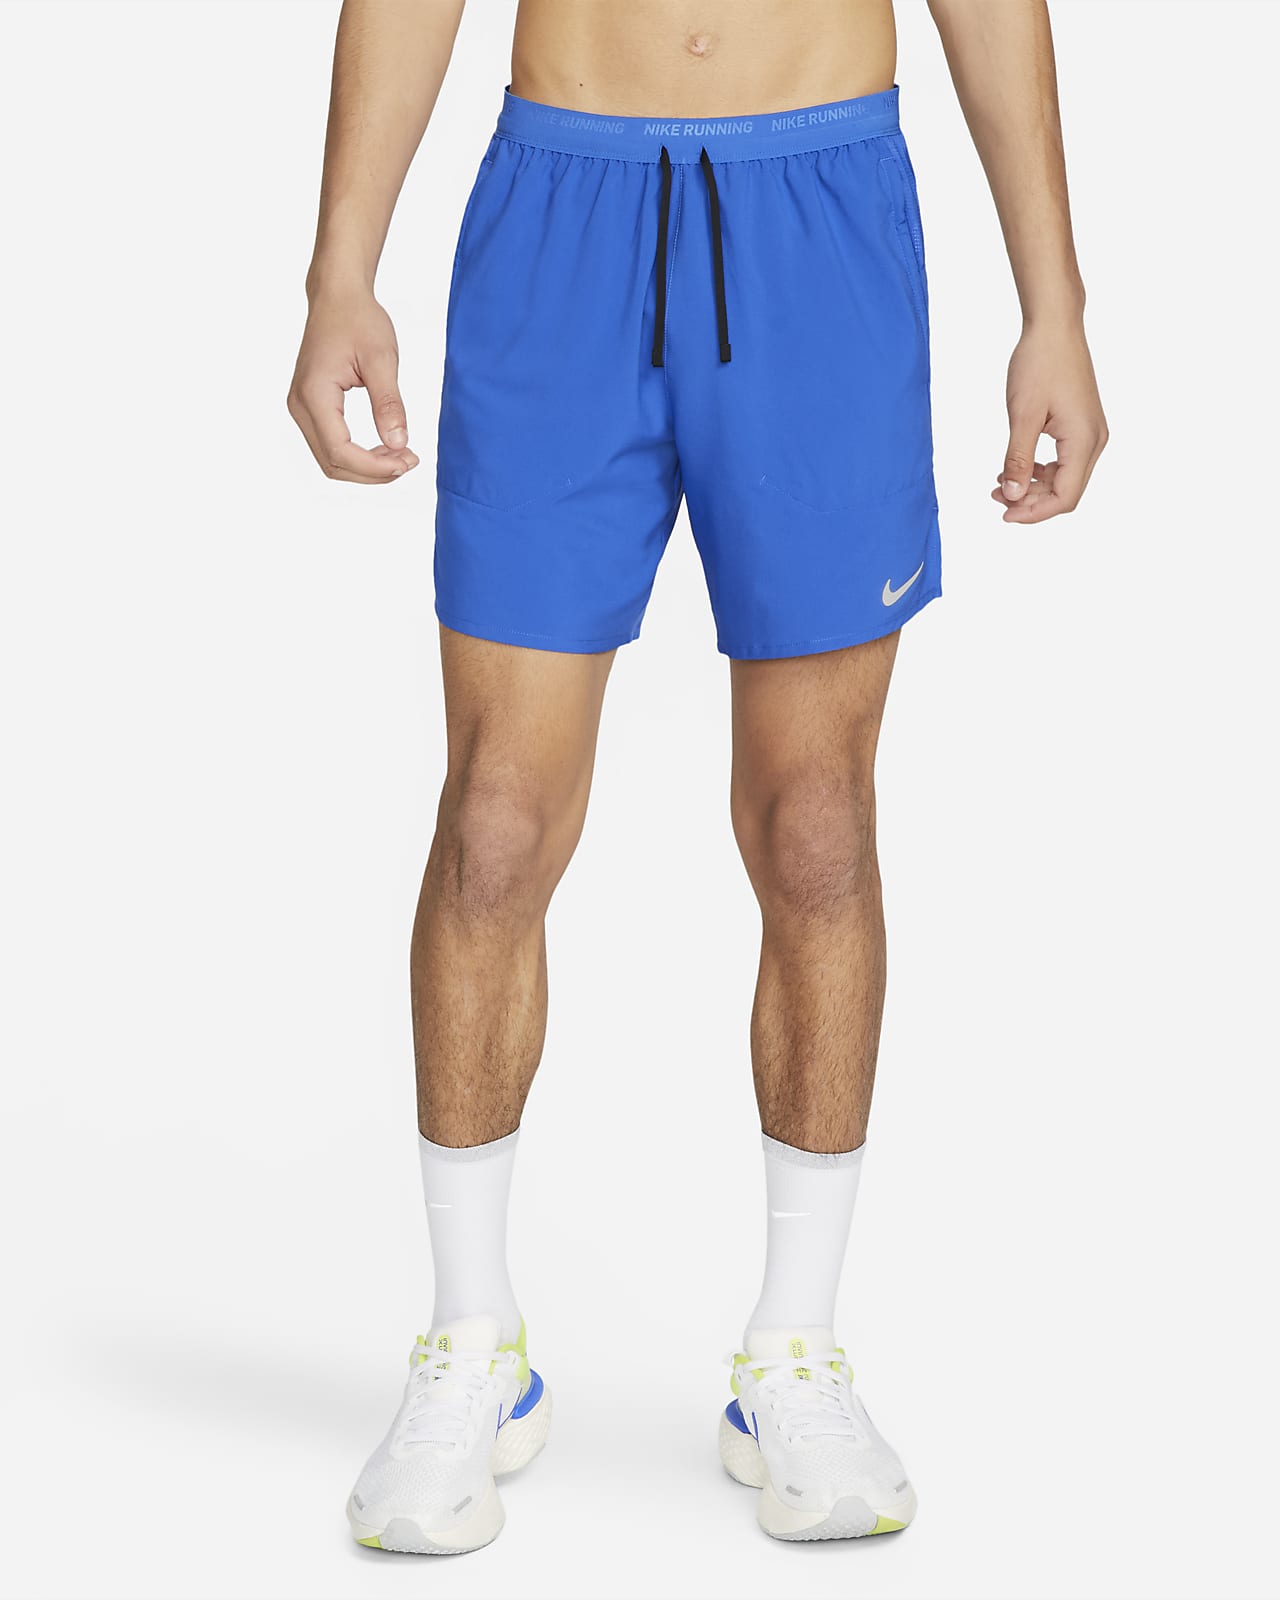 Nike Stride Pantalón corto de running 2 en 1 Dri-FIT de 18 cm - Hombre